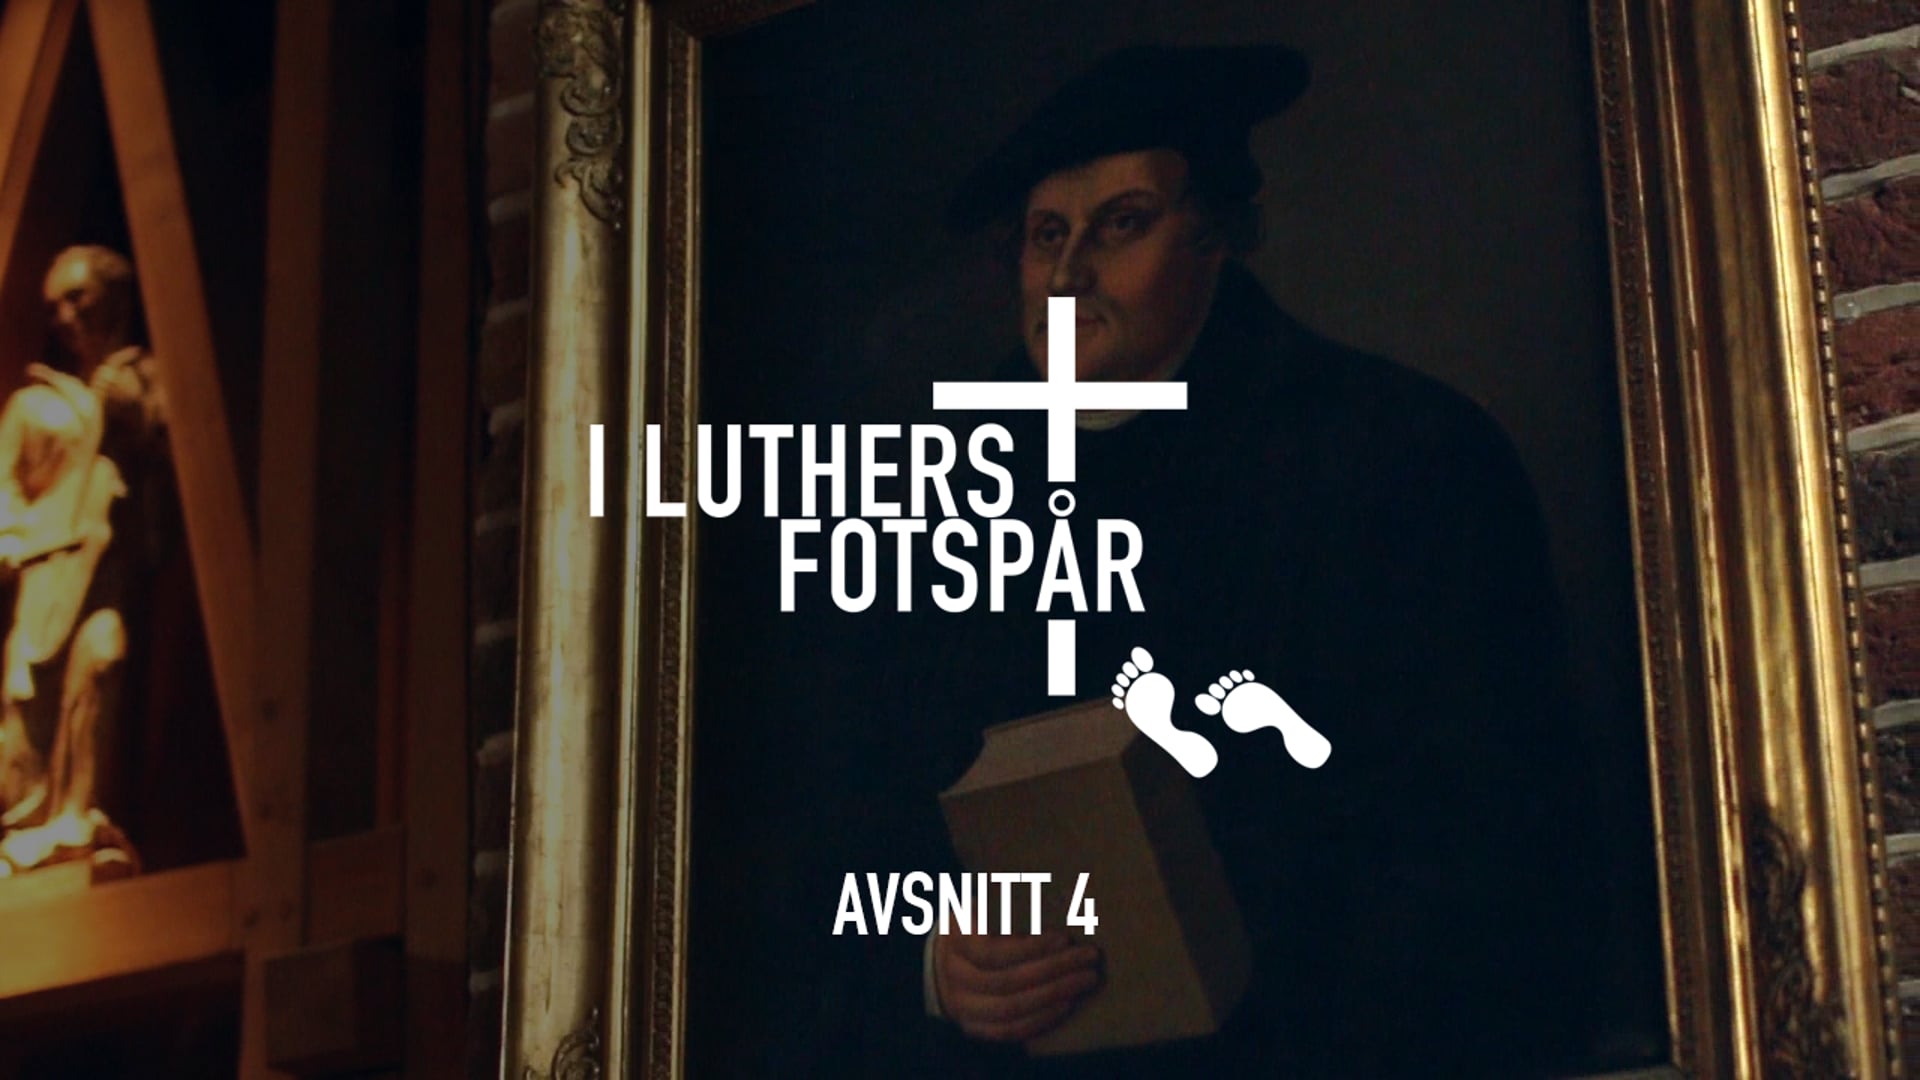 I Luthers fotspår – Avsnitt 4